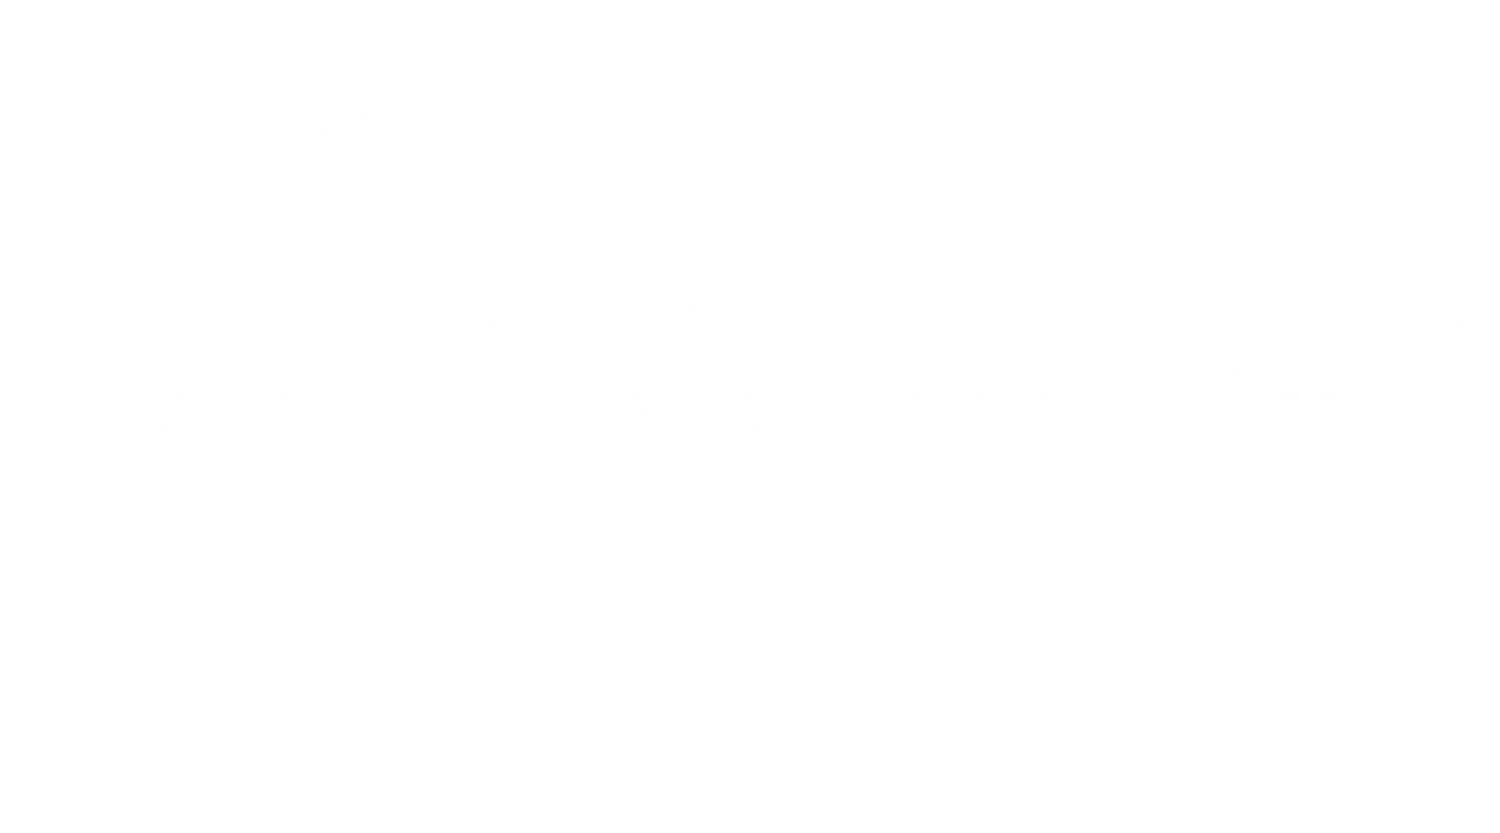 amarTech